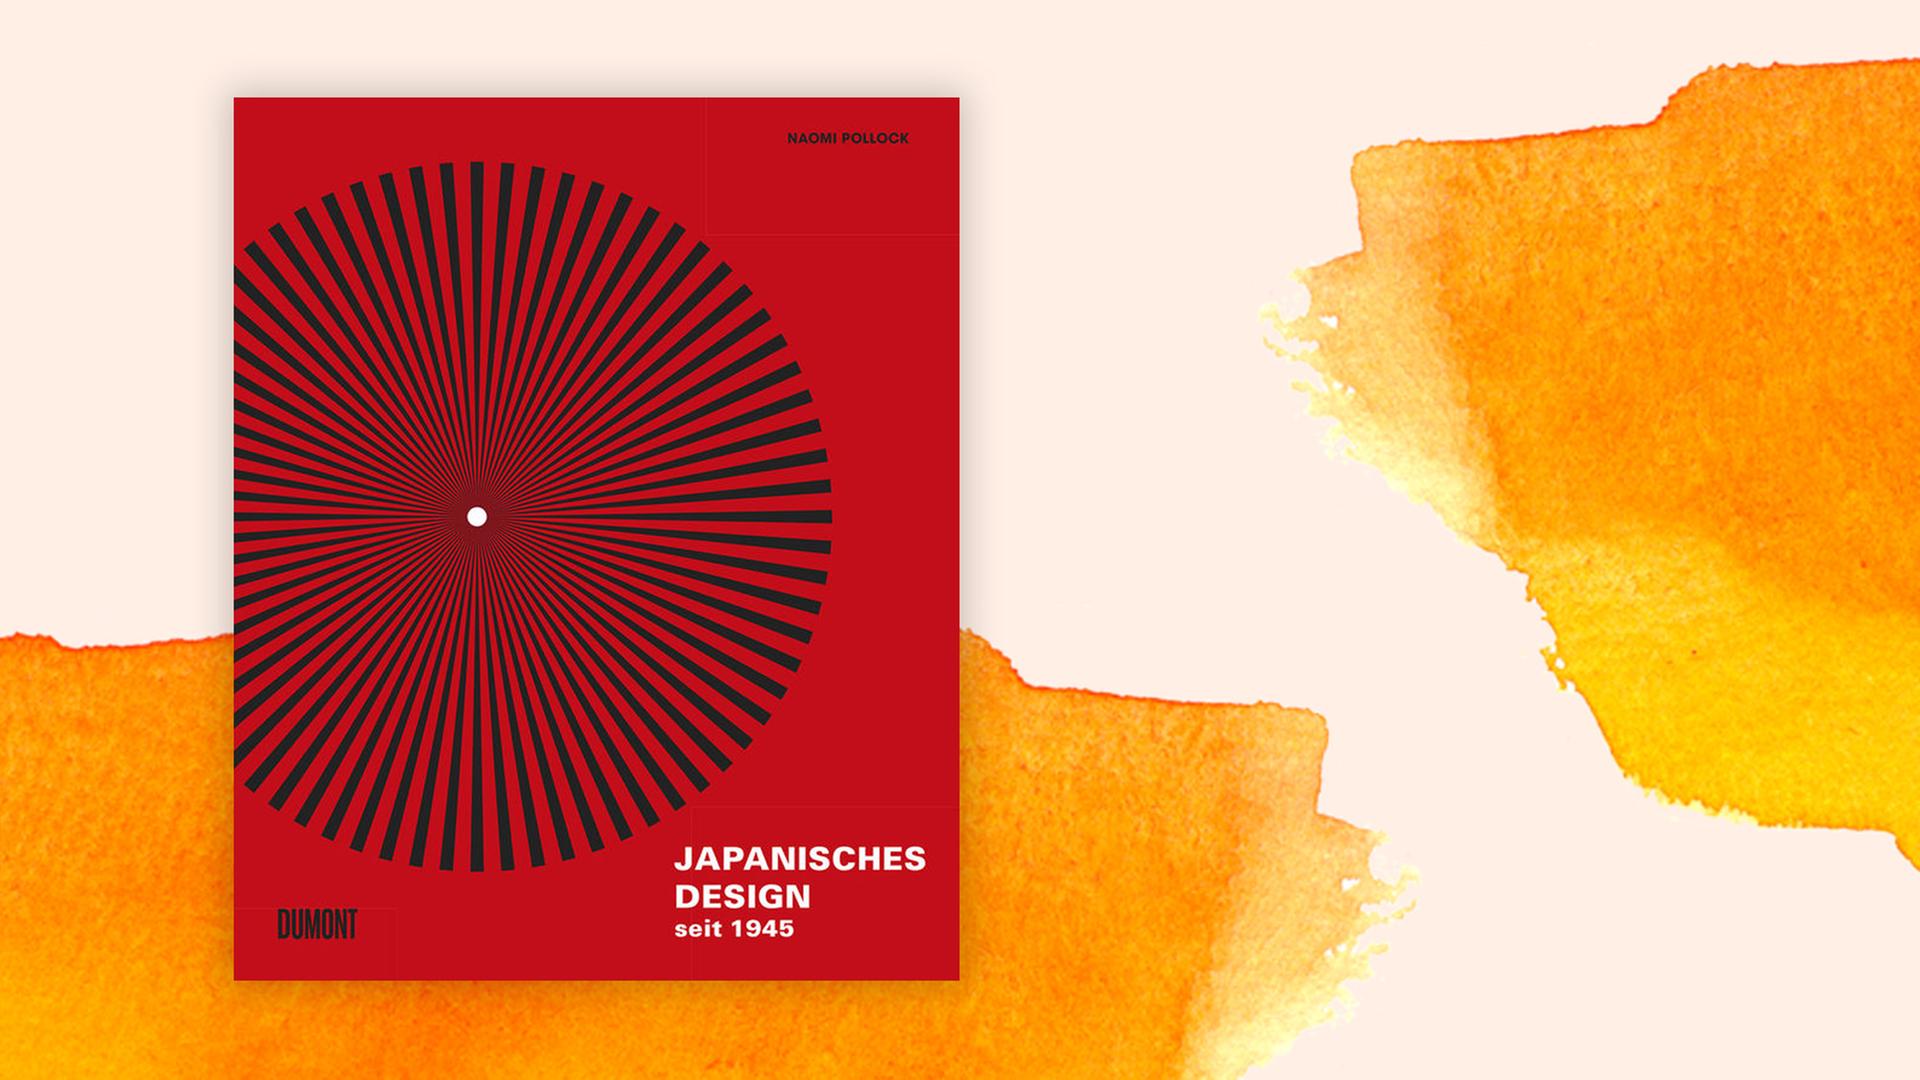 Buchcover zu Naomi Pollock: "Japanisches Design seit 1945"